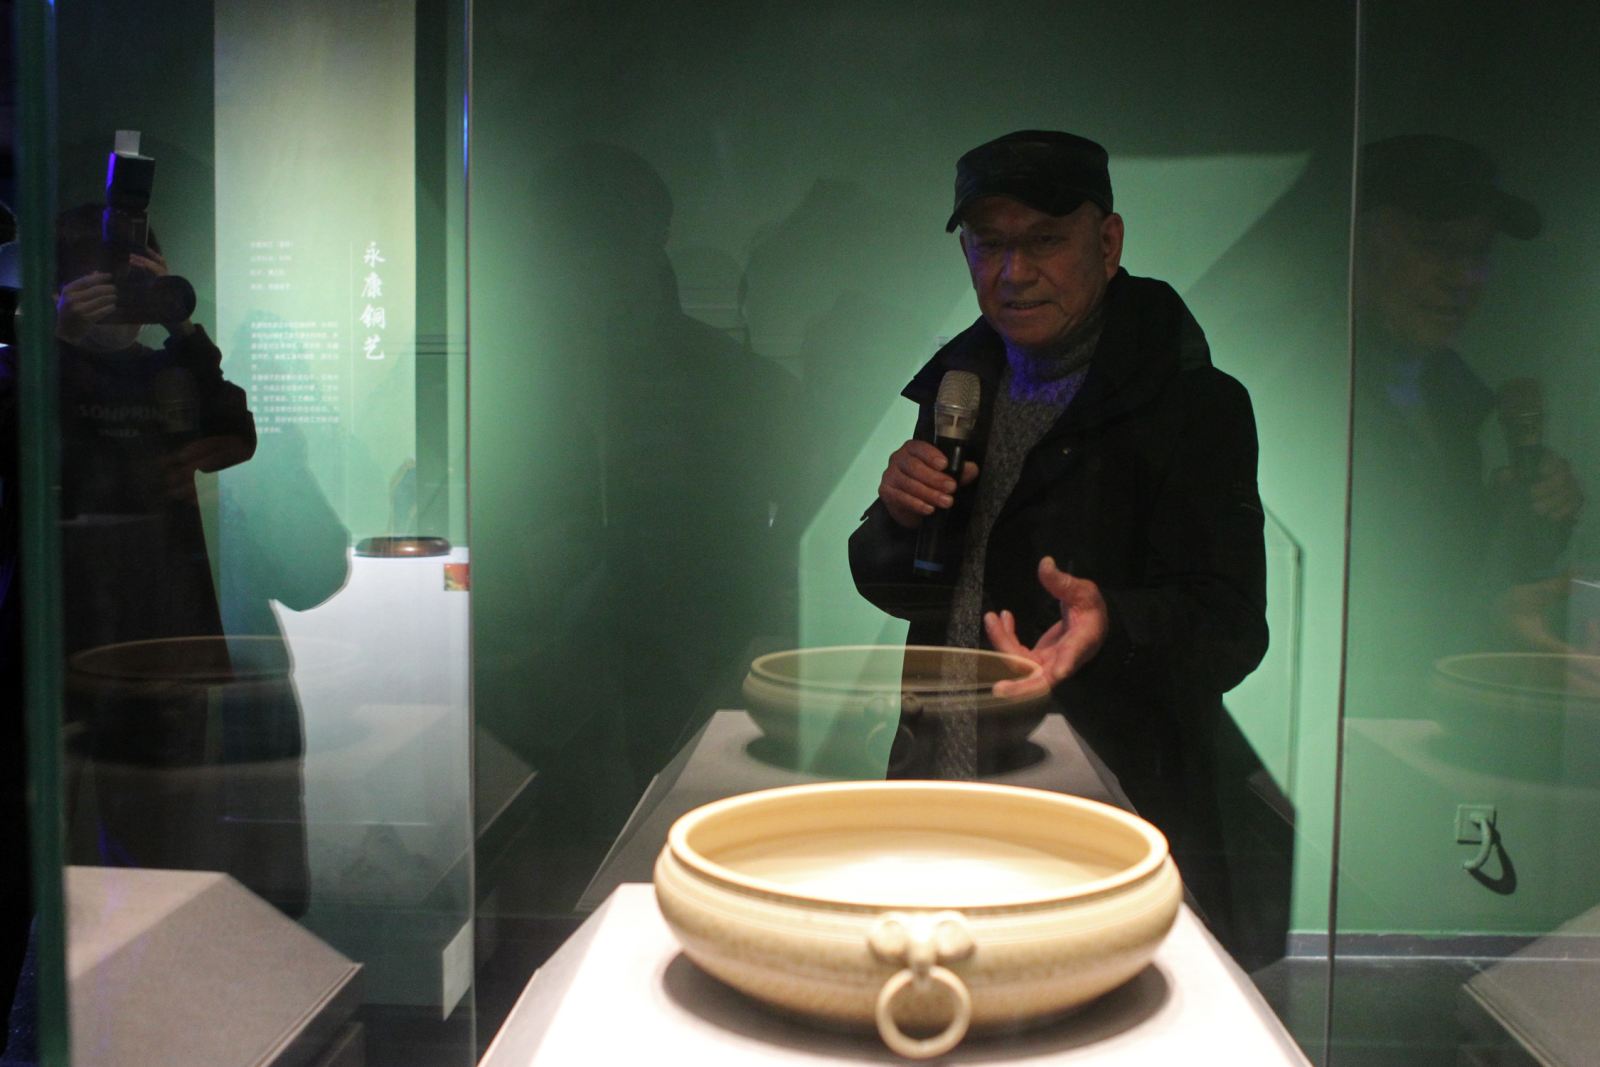 婺州窑陶瓷烧制技艺国家级代表传承人陈新华在介绍参展作品